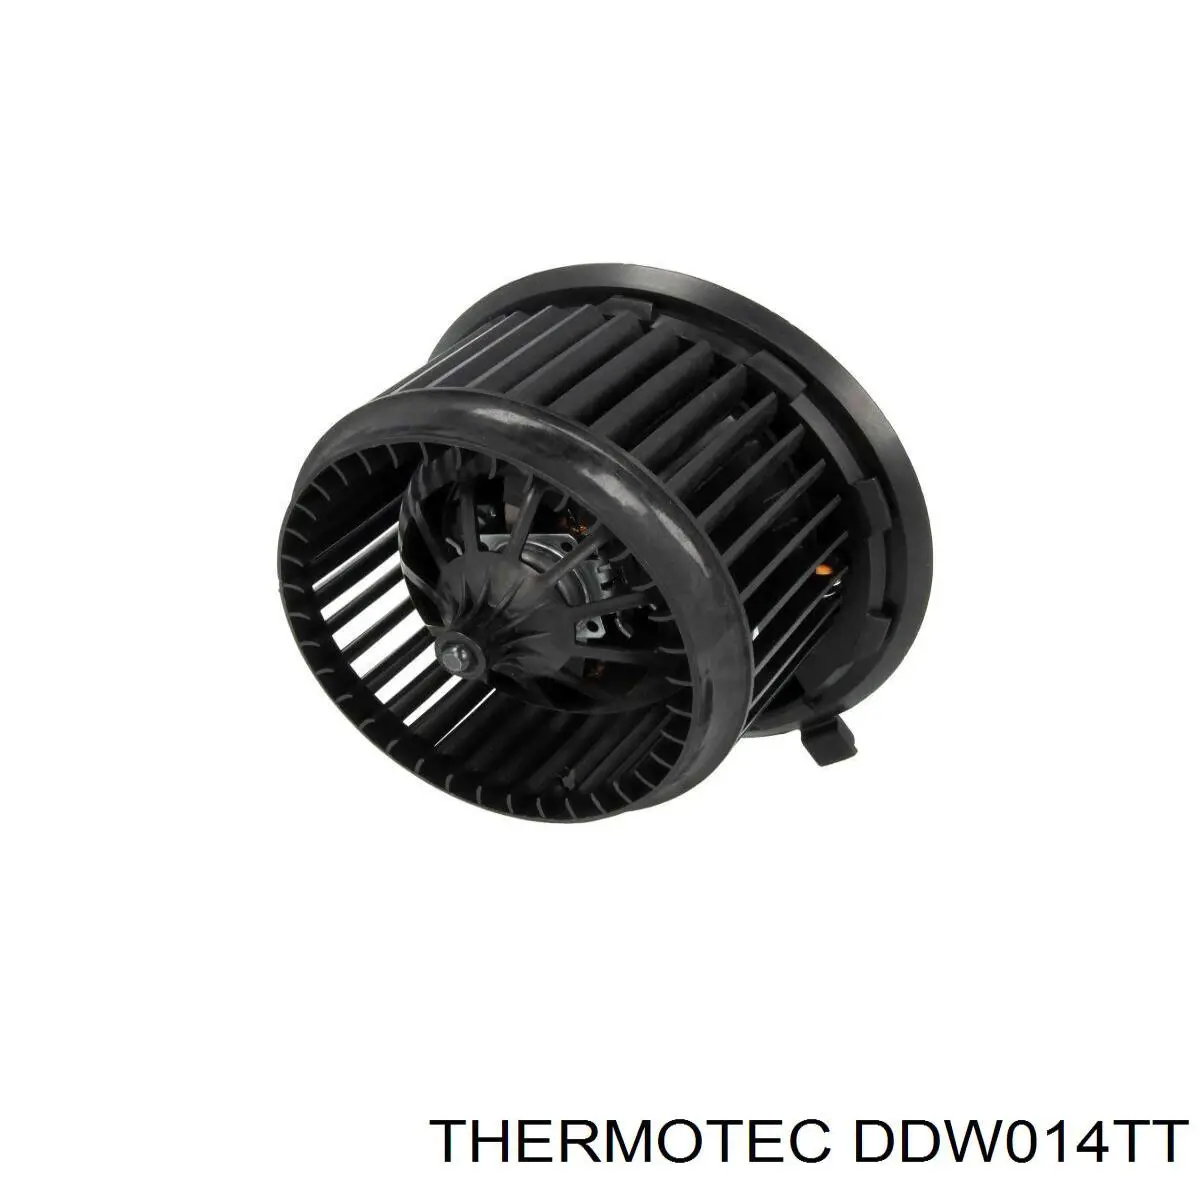 DDW014TT Thermotec motor ventilador trasero de la estufa (calentador interno)